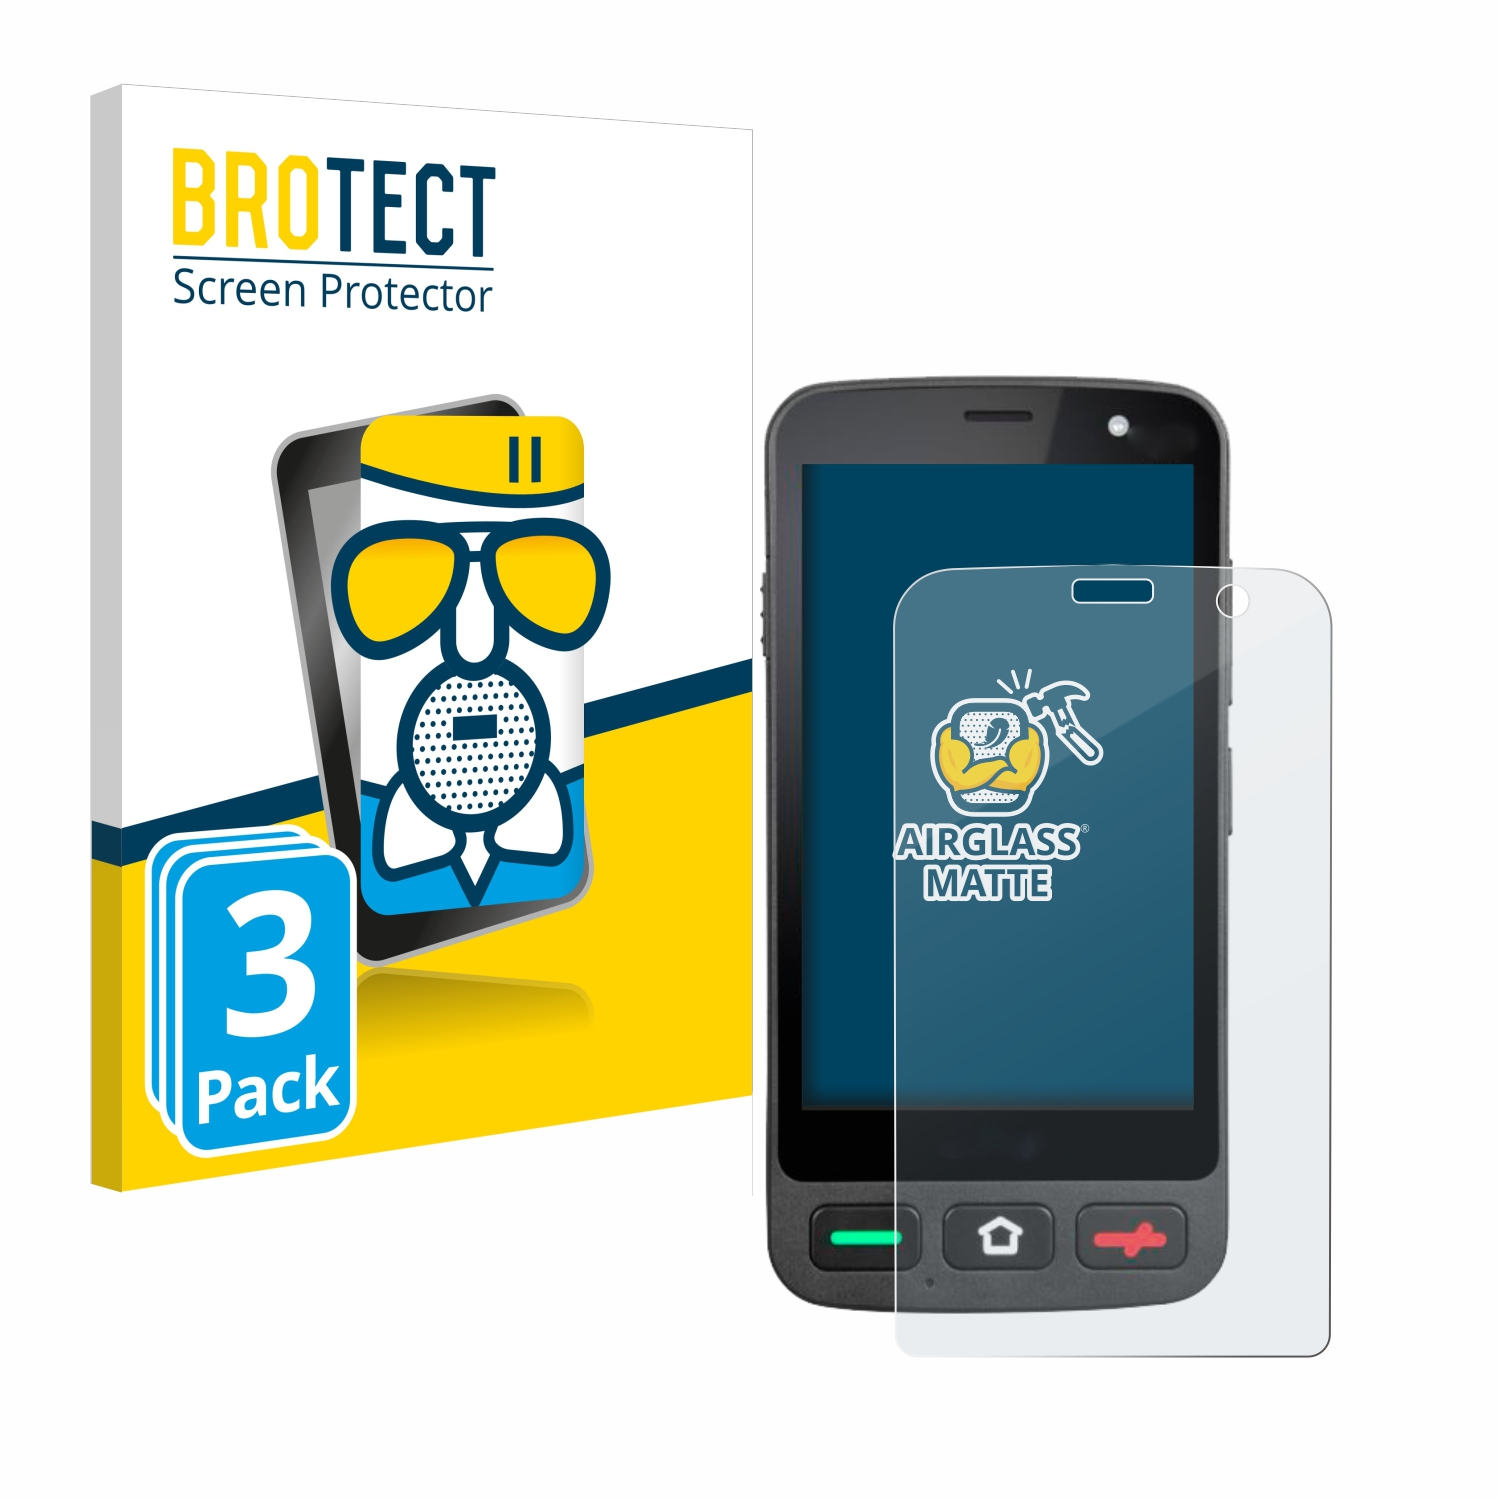 BROTECT 3x Airglass matte Pocket) Schutzfolie(für Amico Brondi